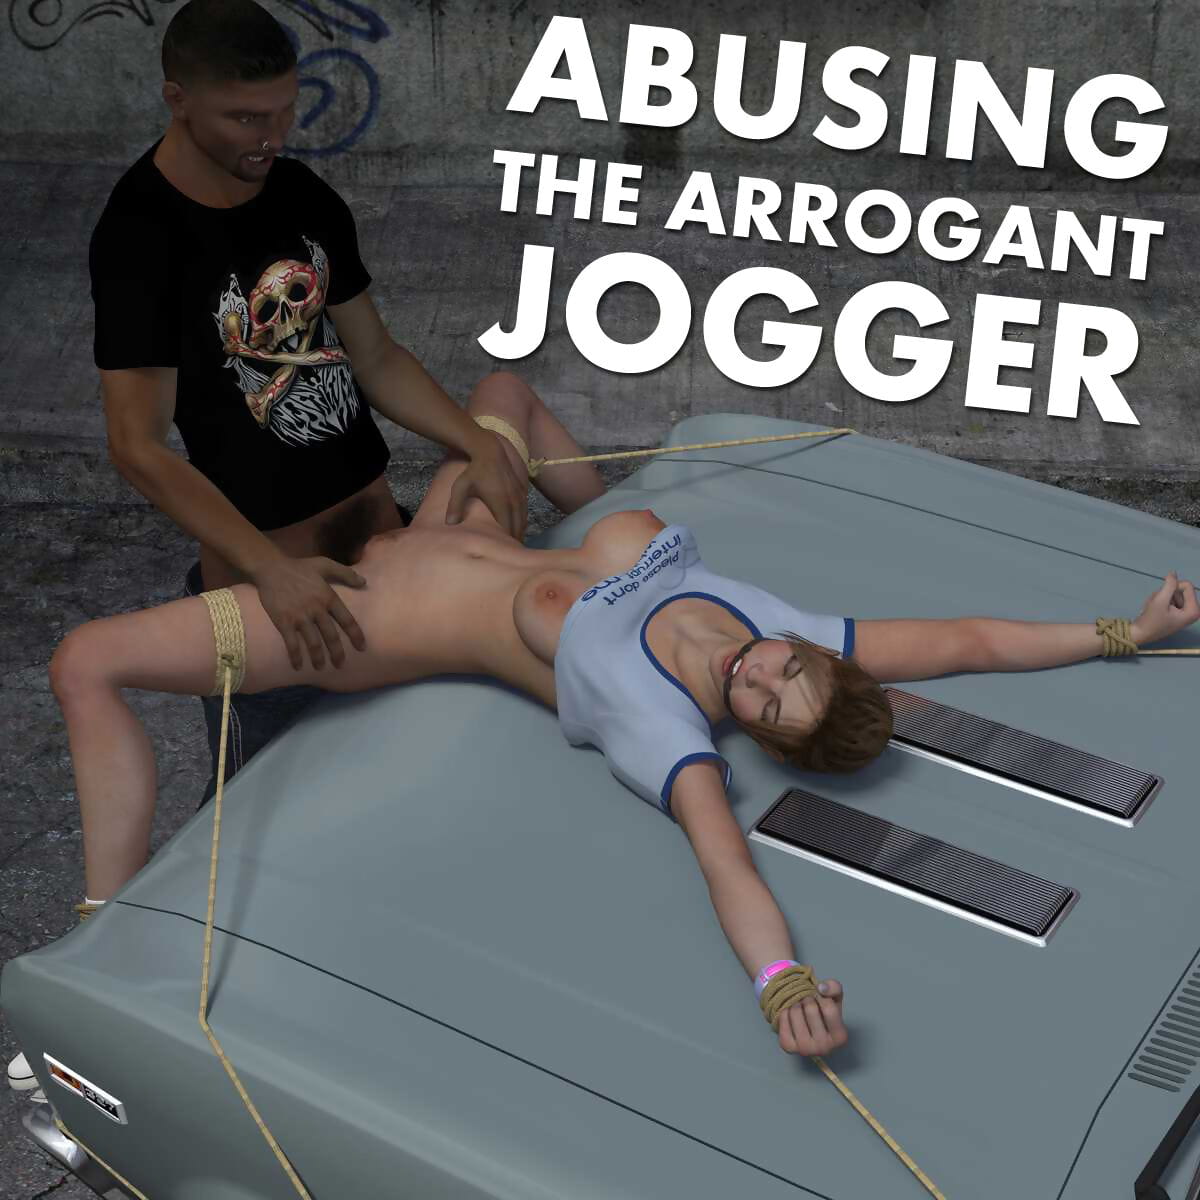 missbrauchen die arrogant jogger page 1